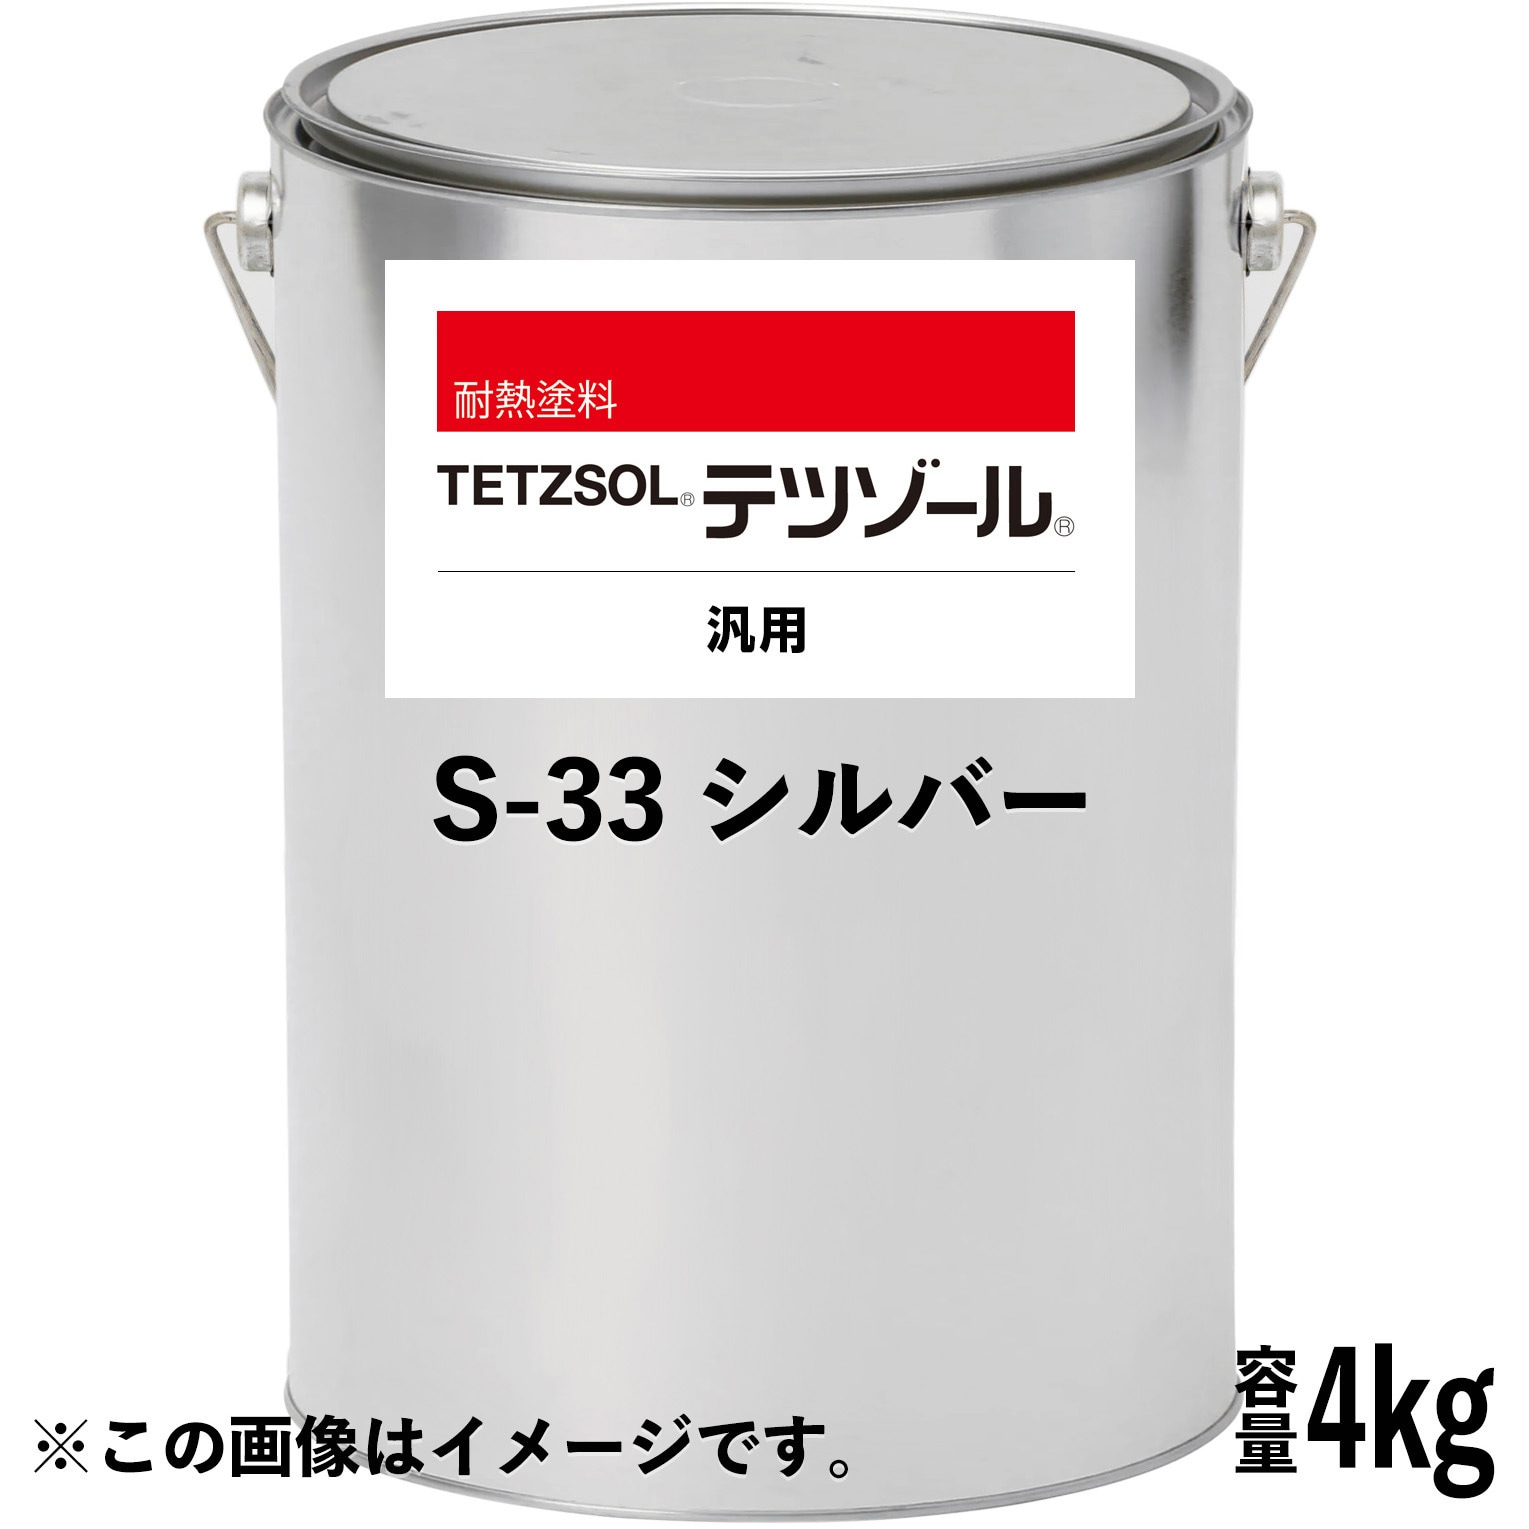 3012953 テツゾール S-33 シルバー 1缶(4kg) 日本ペイント 【通販